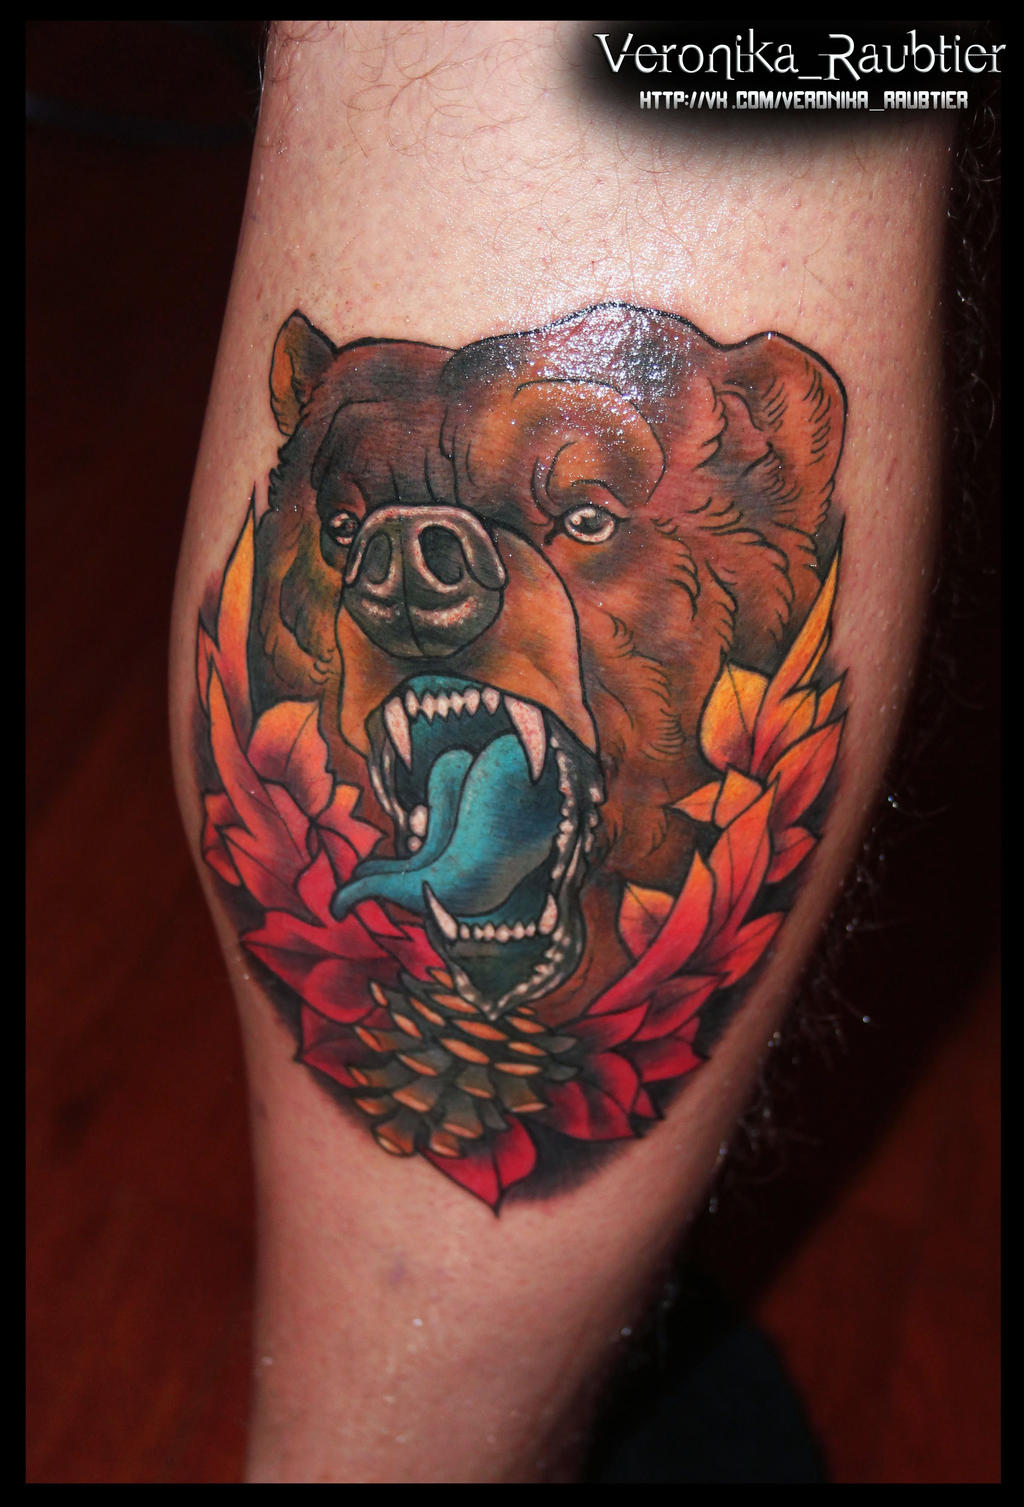 Bear tattoo neotrad by VeronikaRaubtier on DeviantArt